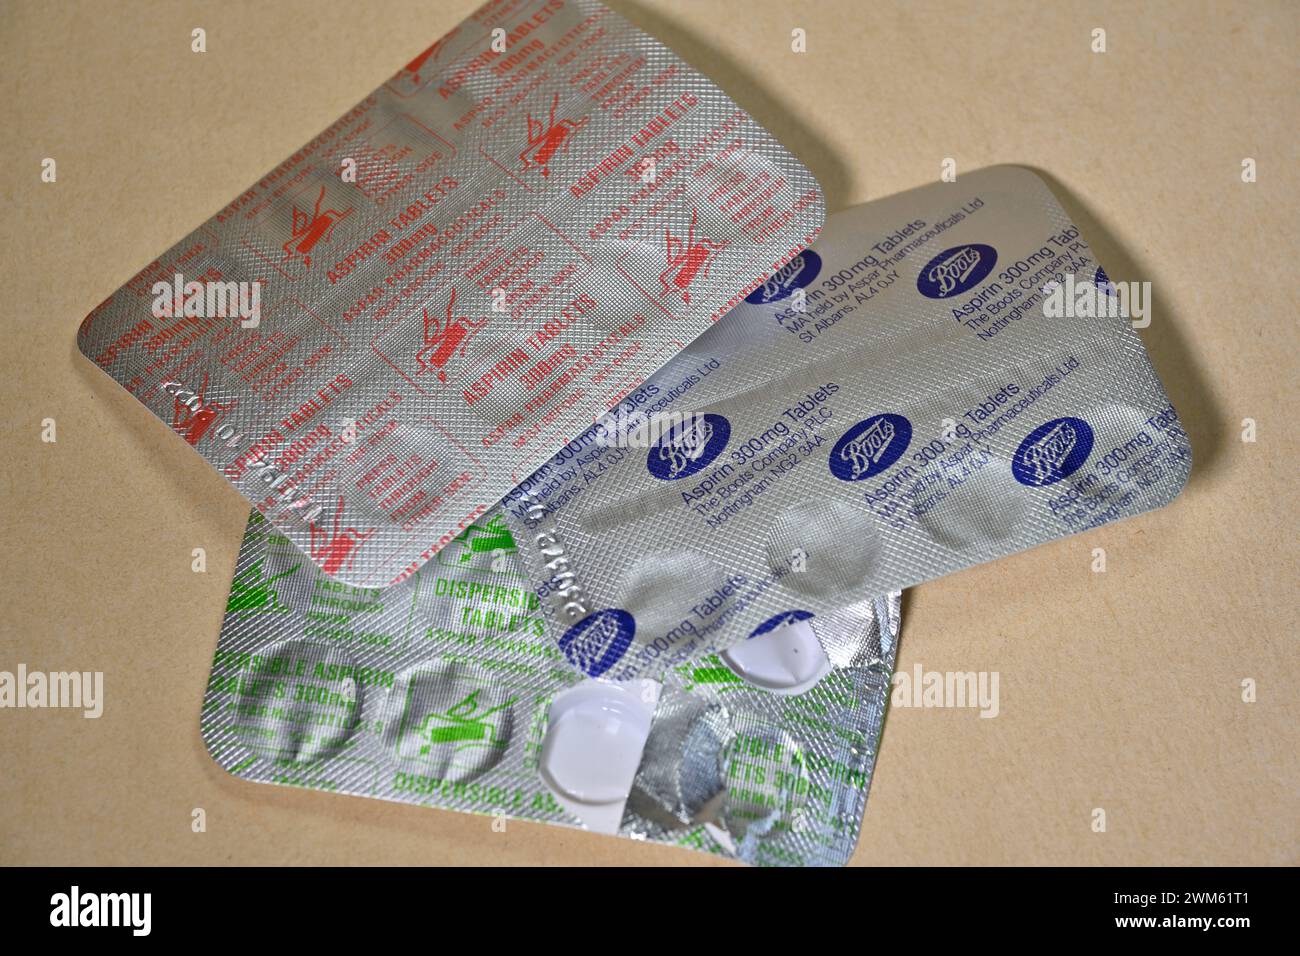 Aspirin-Tabletten, Pillen, einzeln verpackt in Folienverpackungen, die nicht recycelt werden können und die Kosten erhöhen Stockfoto